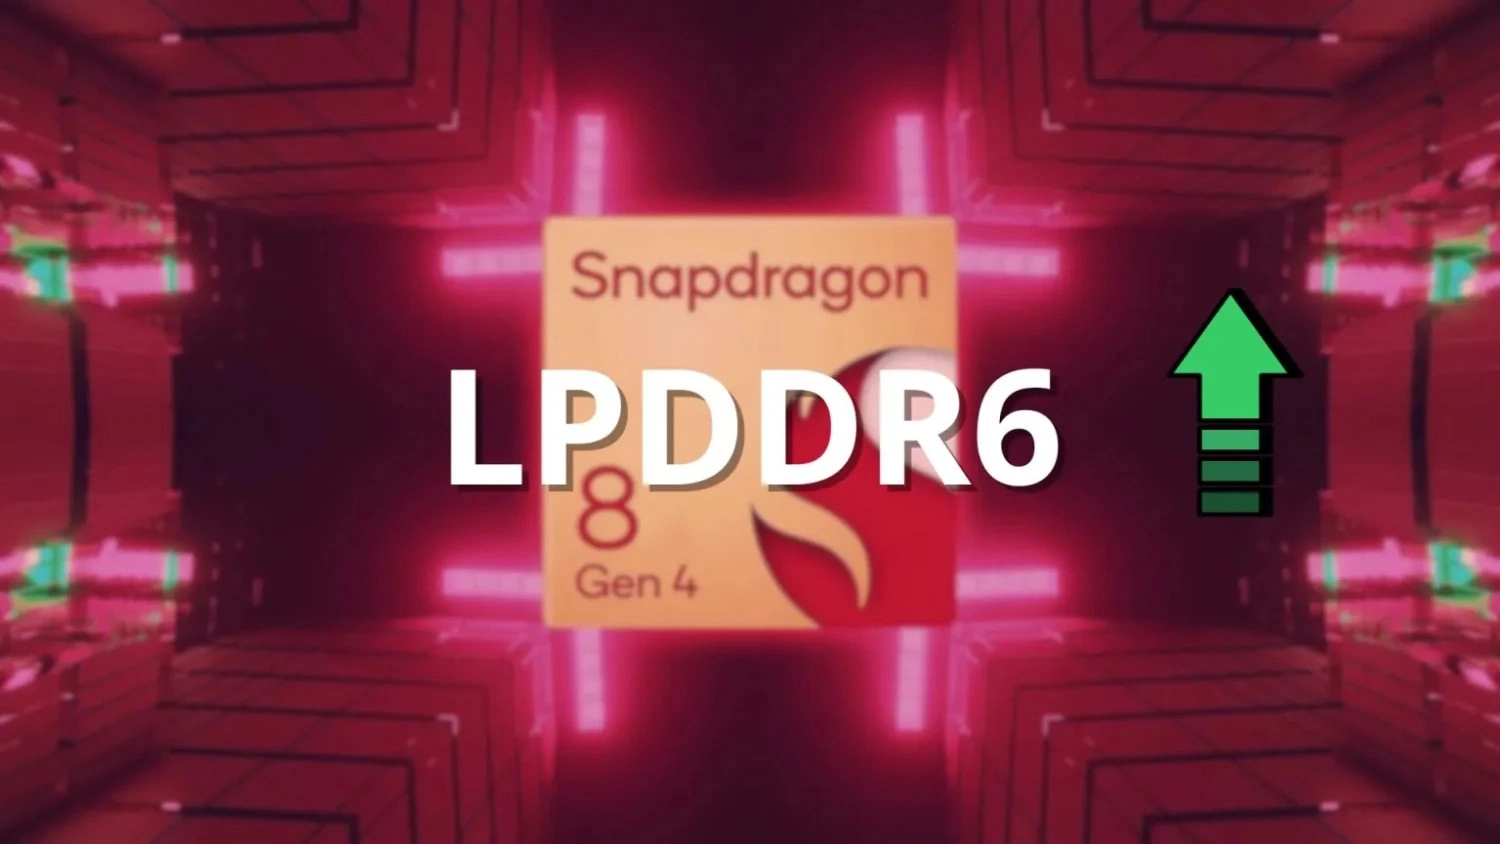 Đây là điện thoại đầu tiên được trang bị Snapdragon 8 Gen 4, Snapdragon 8 Gen 4 sẽ là một trong những SoC di động sớm nhất hỗ trợ bộ nhớ LPDDR6